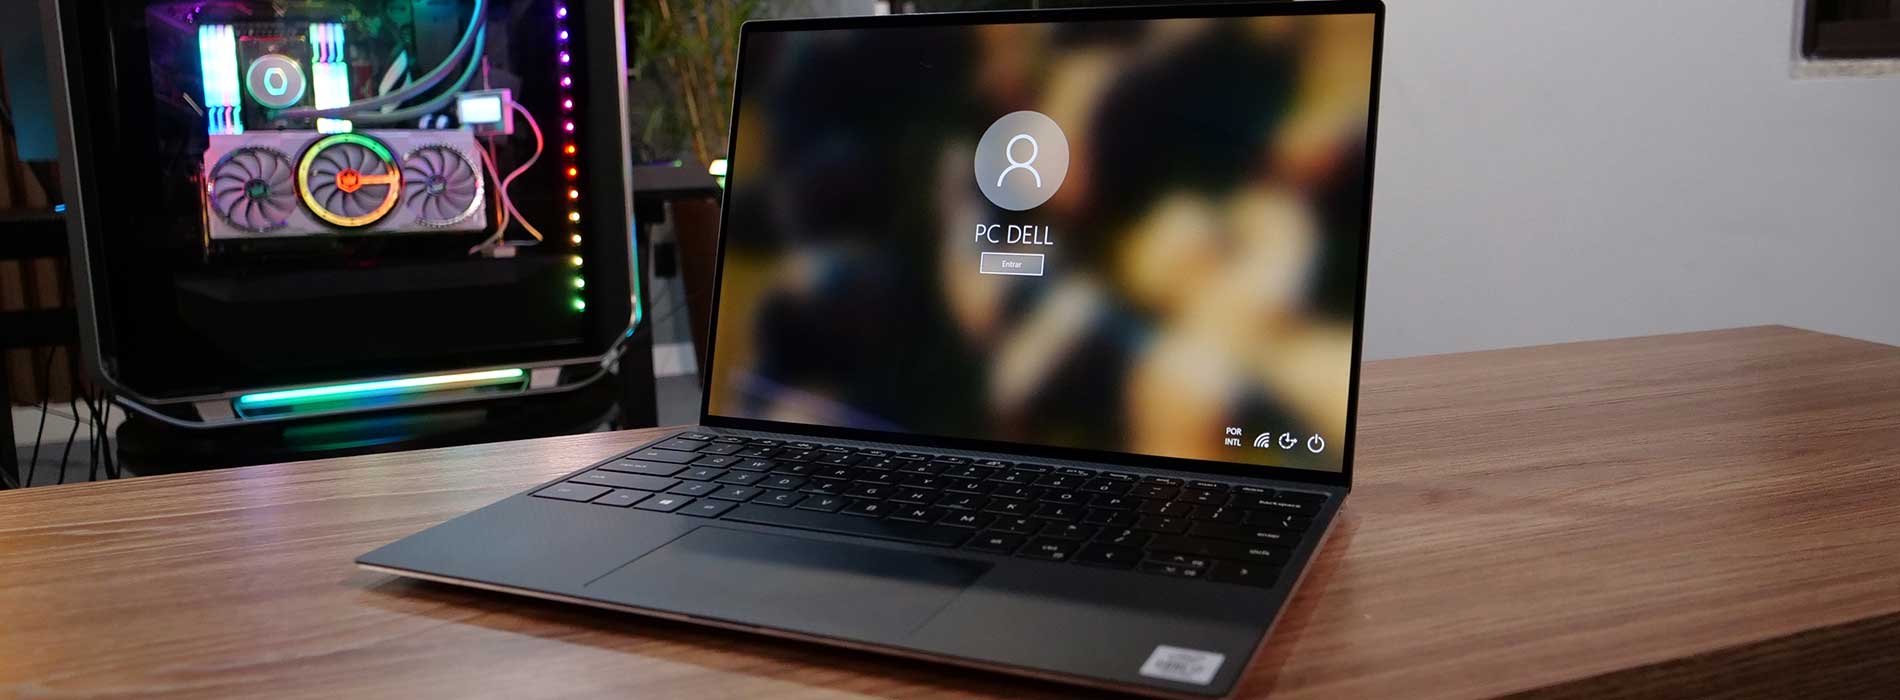 Análise: Dell XPS 13 - um belíssimo ultrafino para quem pode pagar pelo melhor